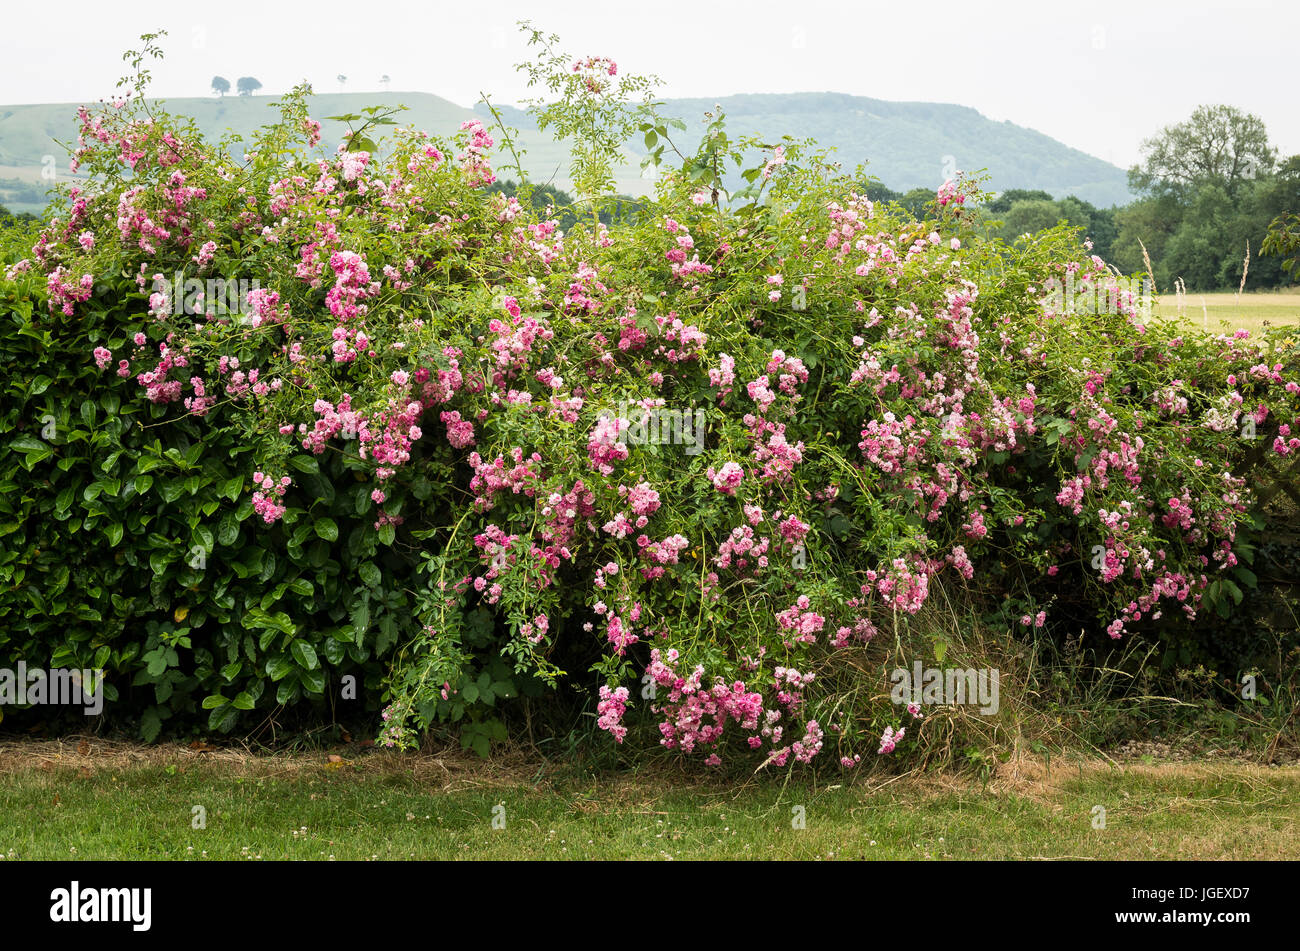 Une rose rose florifère rambler de brouillage et de mixité avec laurel voisins pour former une bordure colorée en couverture d'un jardin anglais Banque D'Images